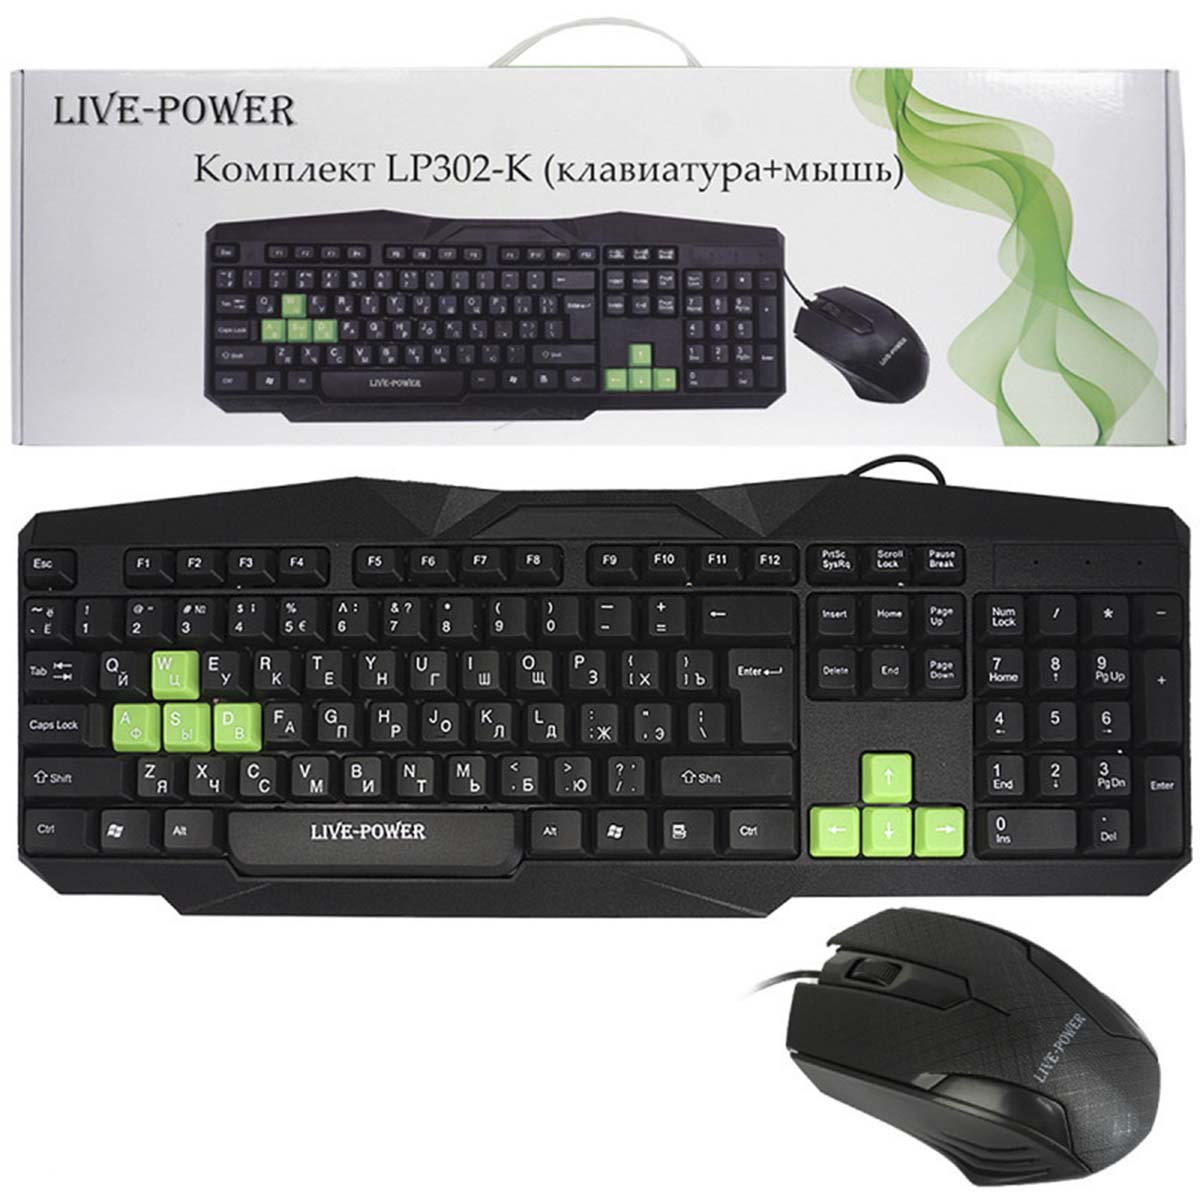 Игровые комплекты клавиатура мышь купить. A4tech KK-3330s. Live Power клавиатура. Rush SBC-775g-k. Ryzon комплект Клава мышь.